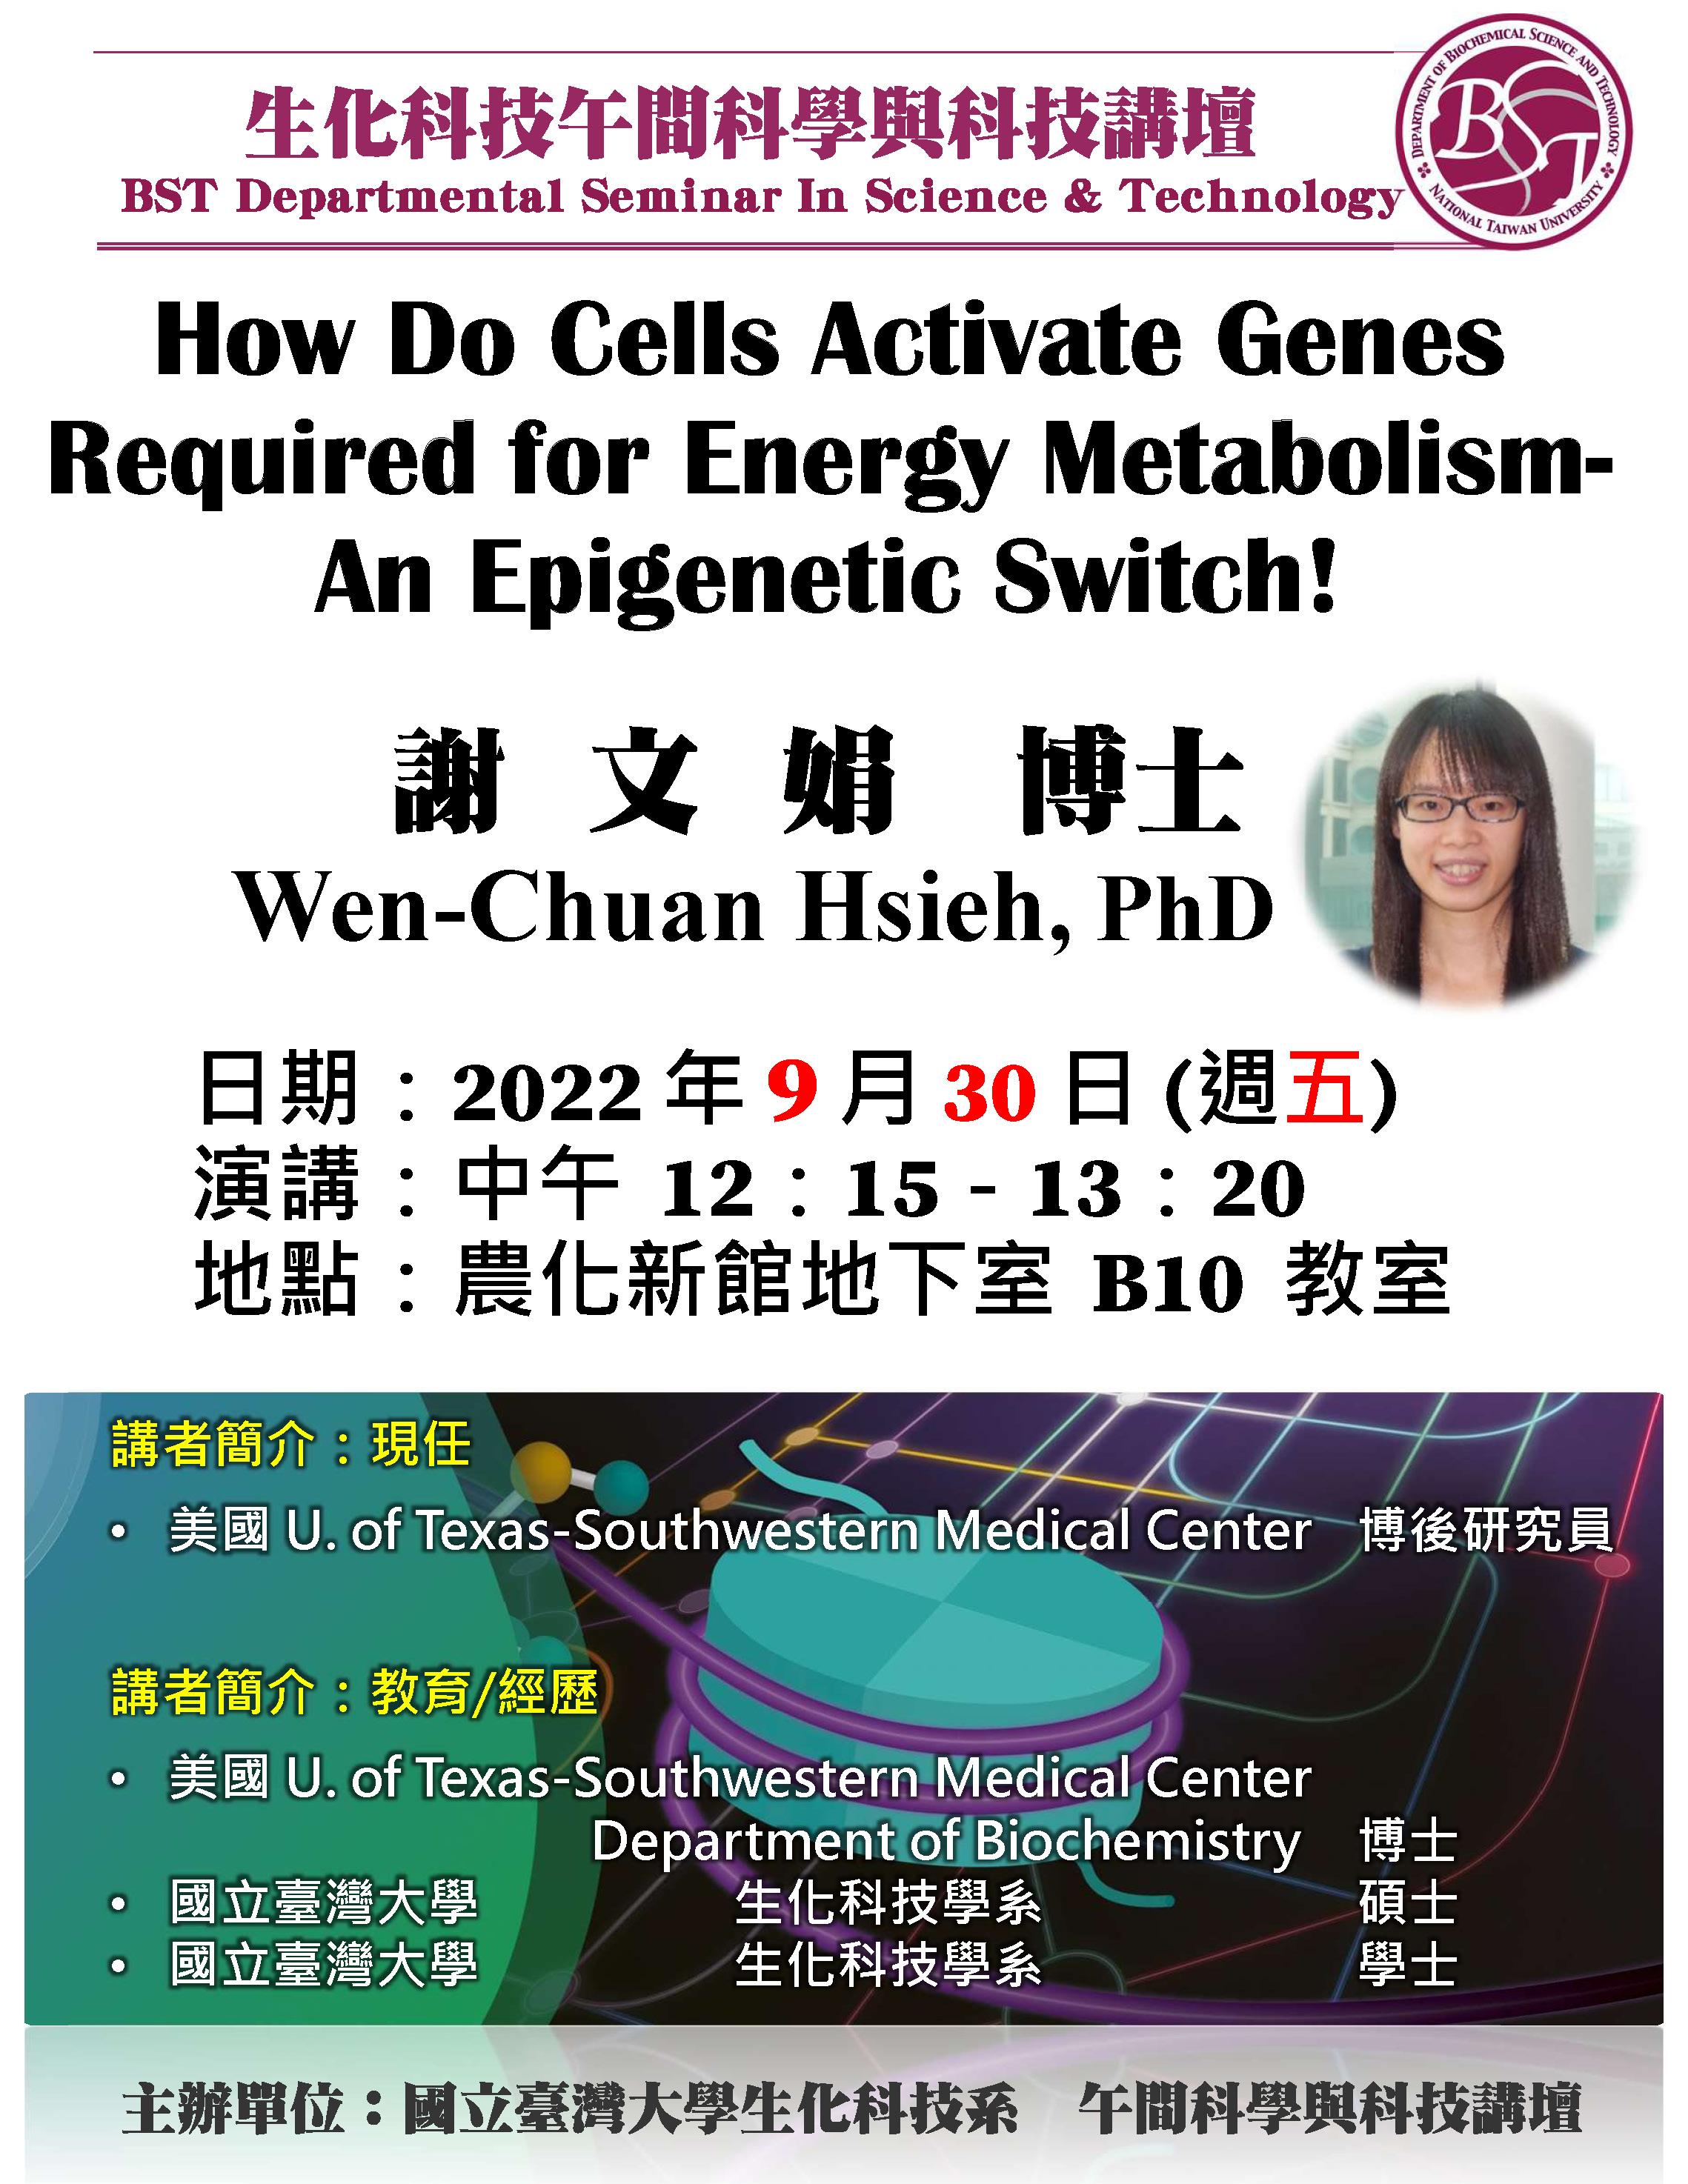 【午間科學與科技講壇】(9/30/2022) 謝文娟博士-「​How Do Cells Activate Genes Required for Energy Metabolism- An Epigenetic Switch!」